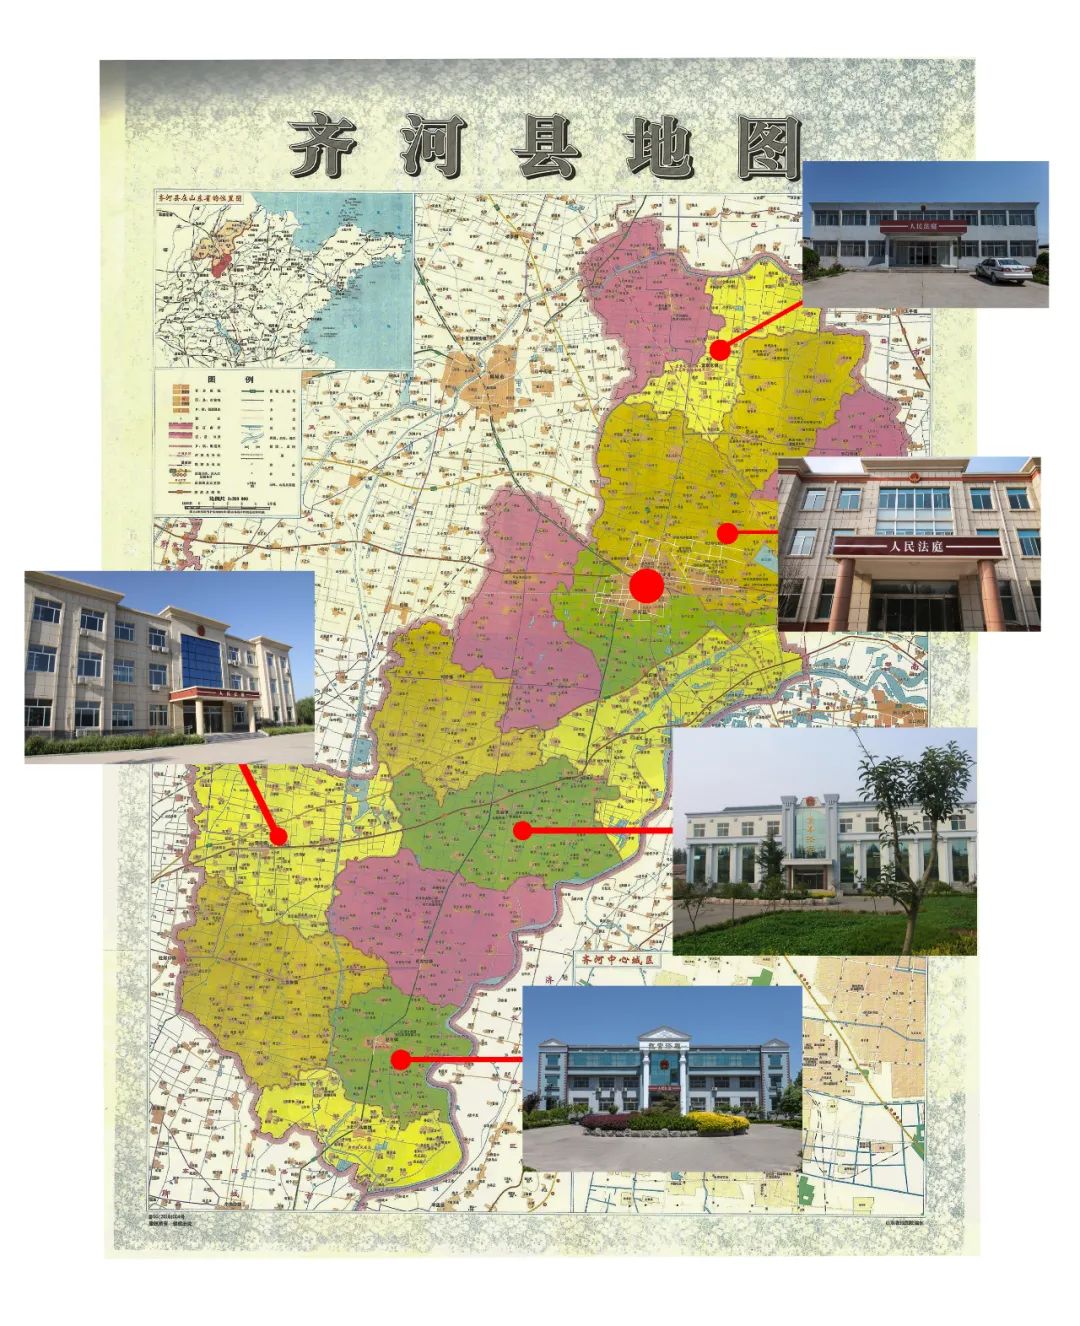 齐河县地图详细乡镇图片